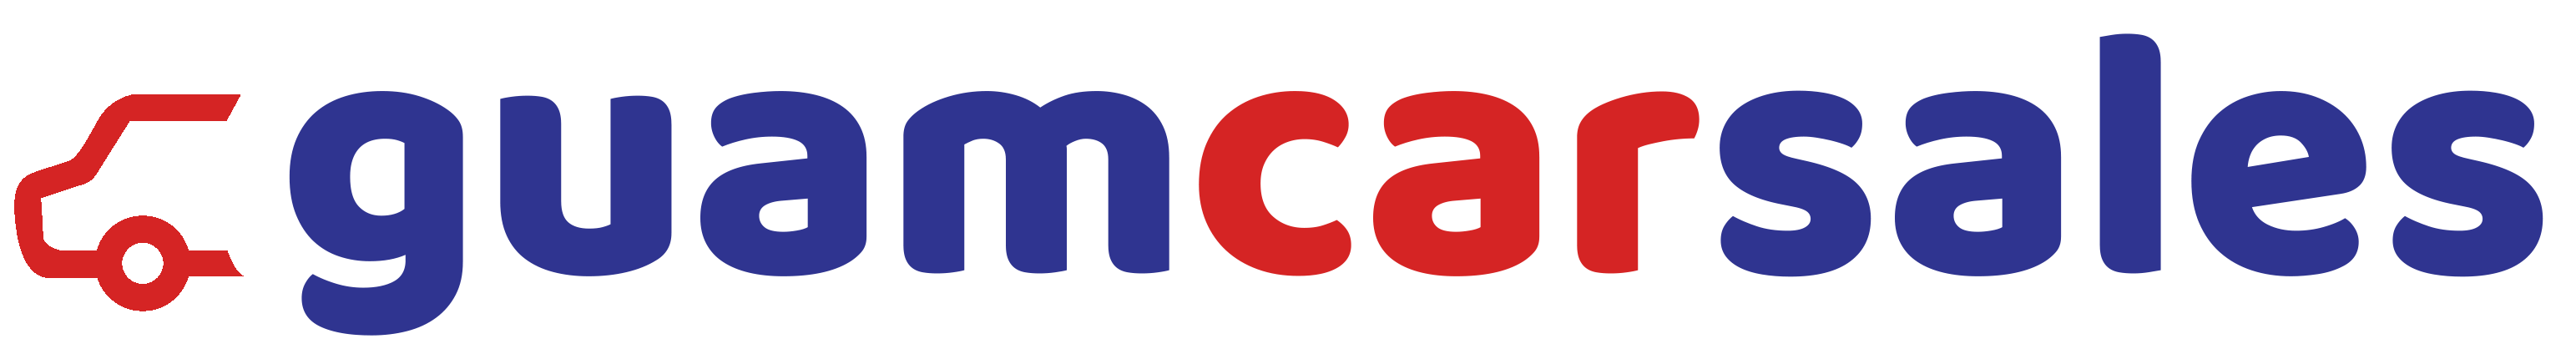 Guamcarsales logo